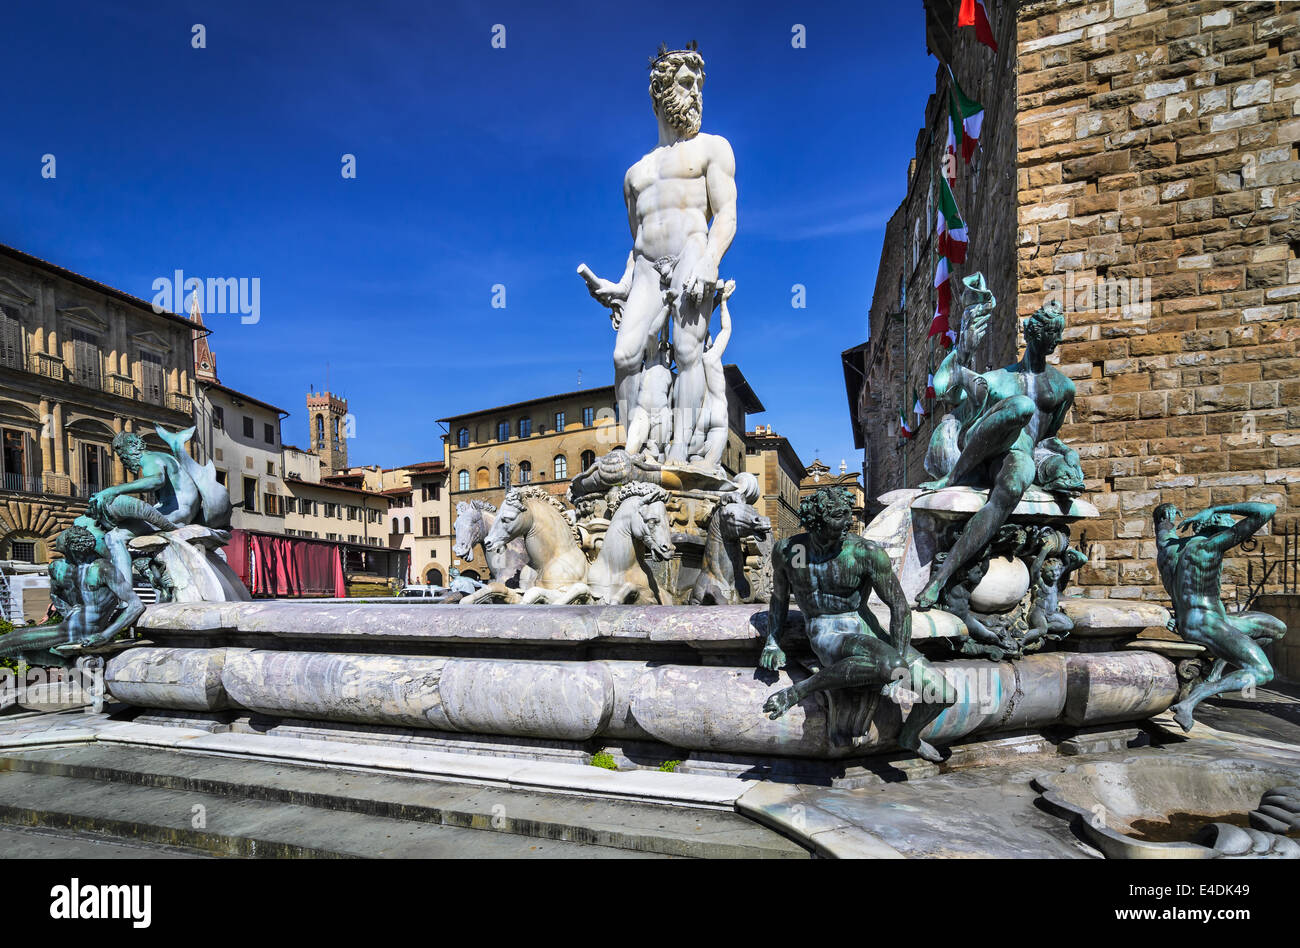 Fuente de Neptuno es una fuente en Florencia, Italia, situado en la Piazza della Signoria, frente al Palazzo Vecchio. Foto de stock